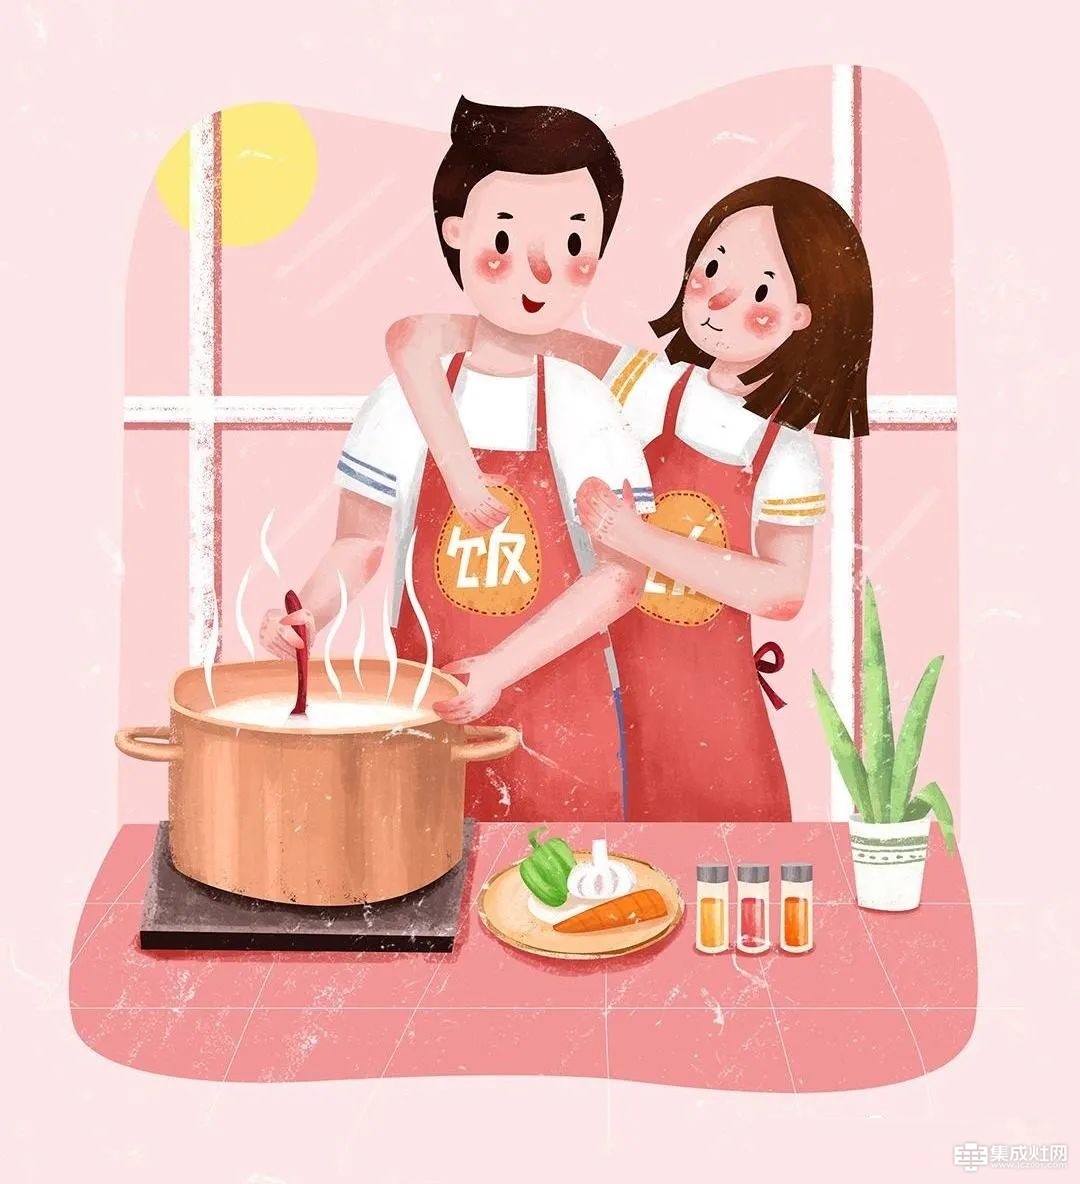 奥普集成灶为爱设计 情人节浪漫在厨房